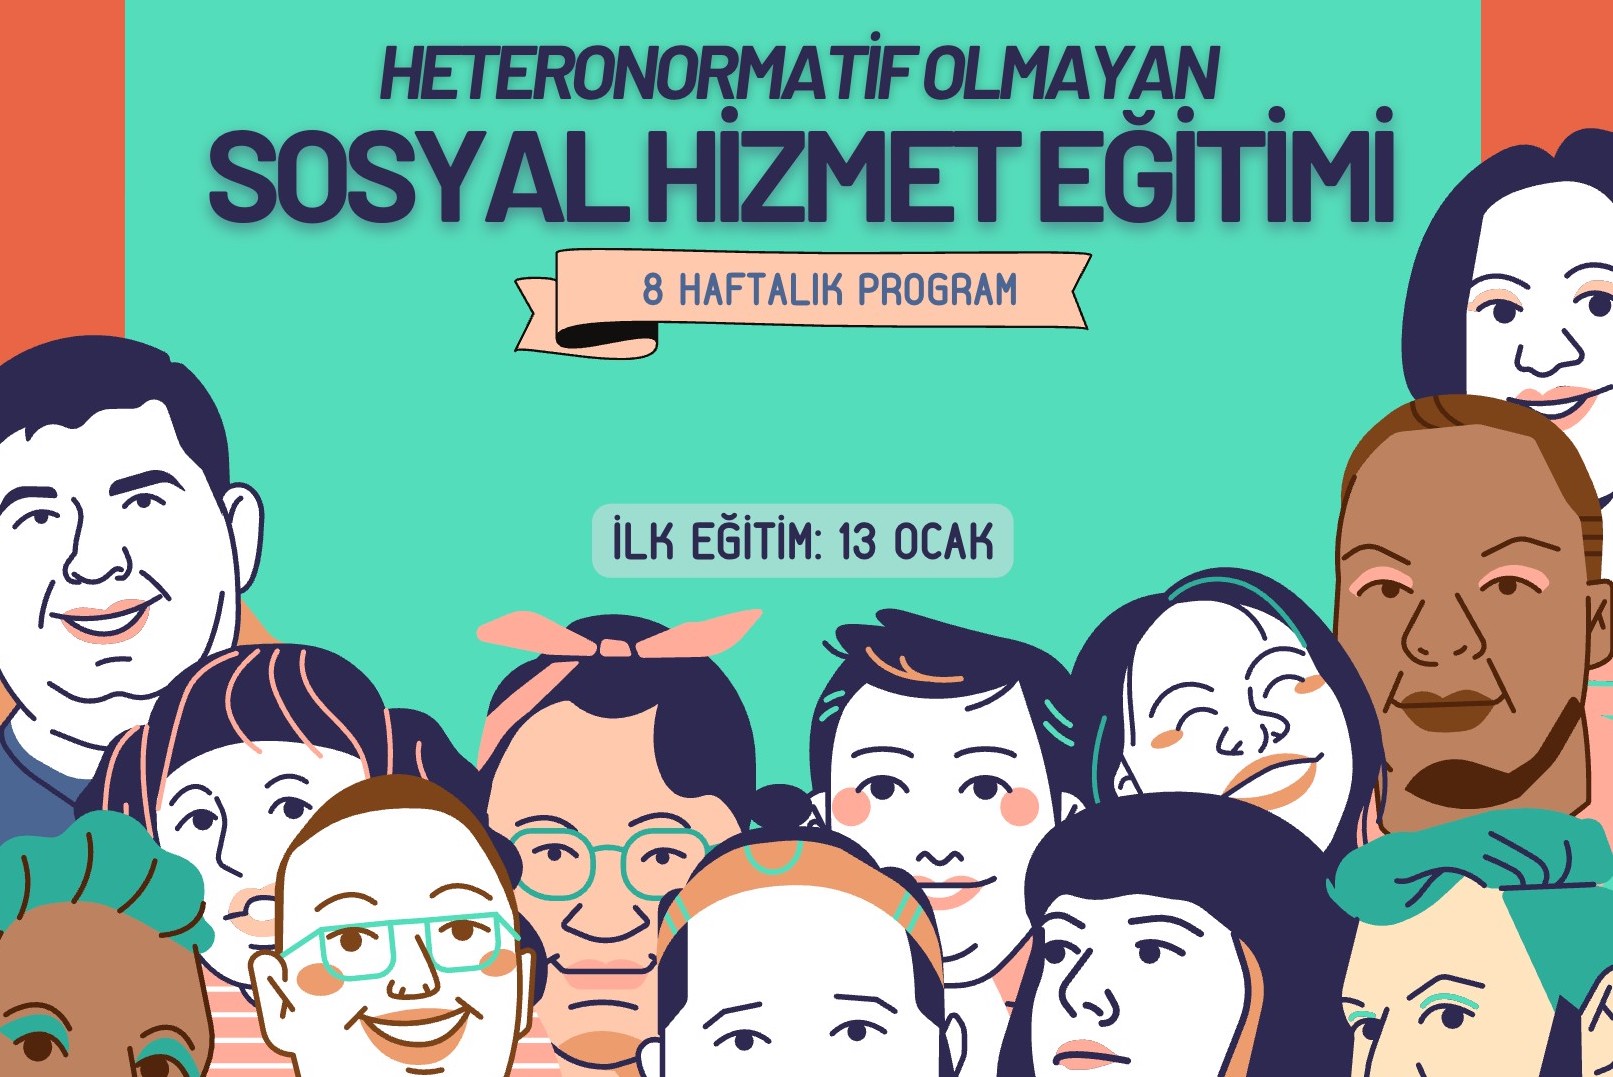 ÜniKuir’den 8 haftalık Heteronormatif Olmayan Sosyal Hizmet Eğitimi Kaos GL - LGBTİ+ Haber Portalı